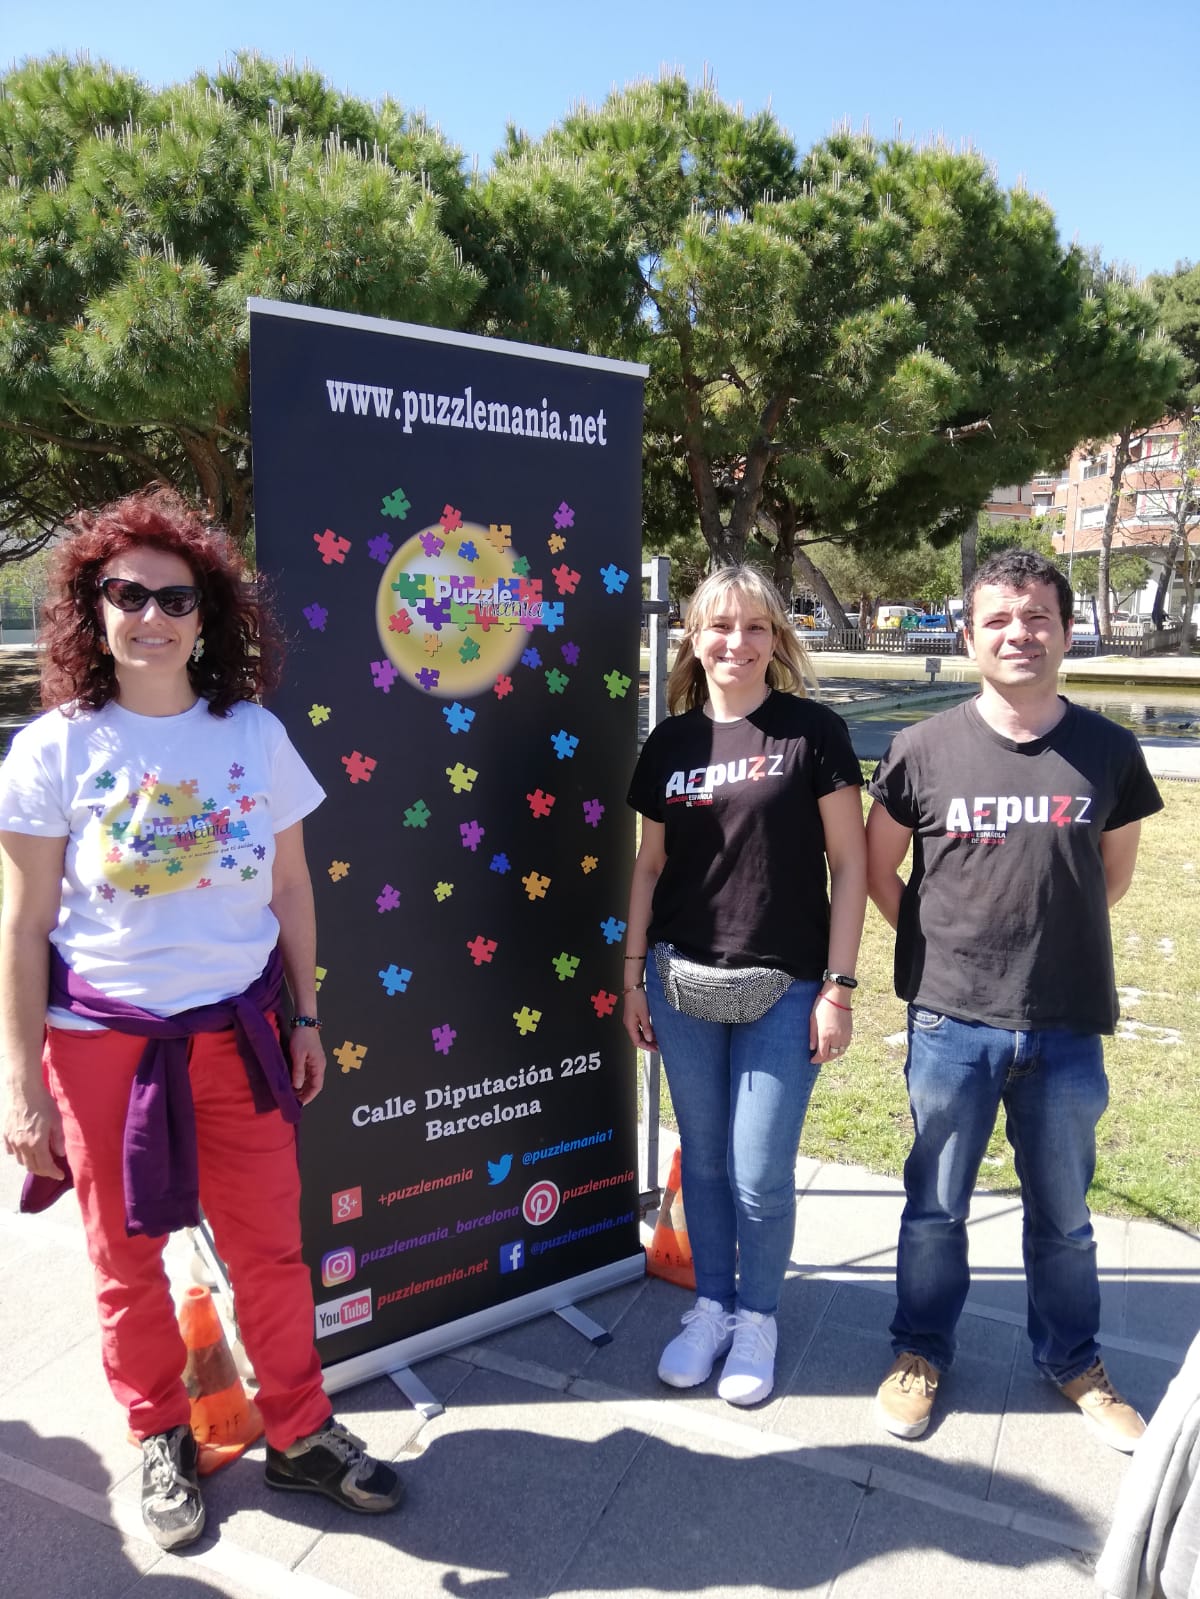 Caroline de Puzzlemania con Pilar y Alejandro, organizadores del III Concurso de Puzzles de Viladecans